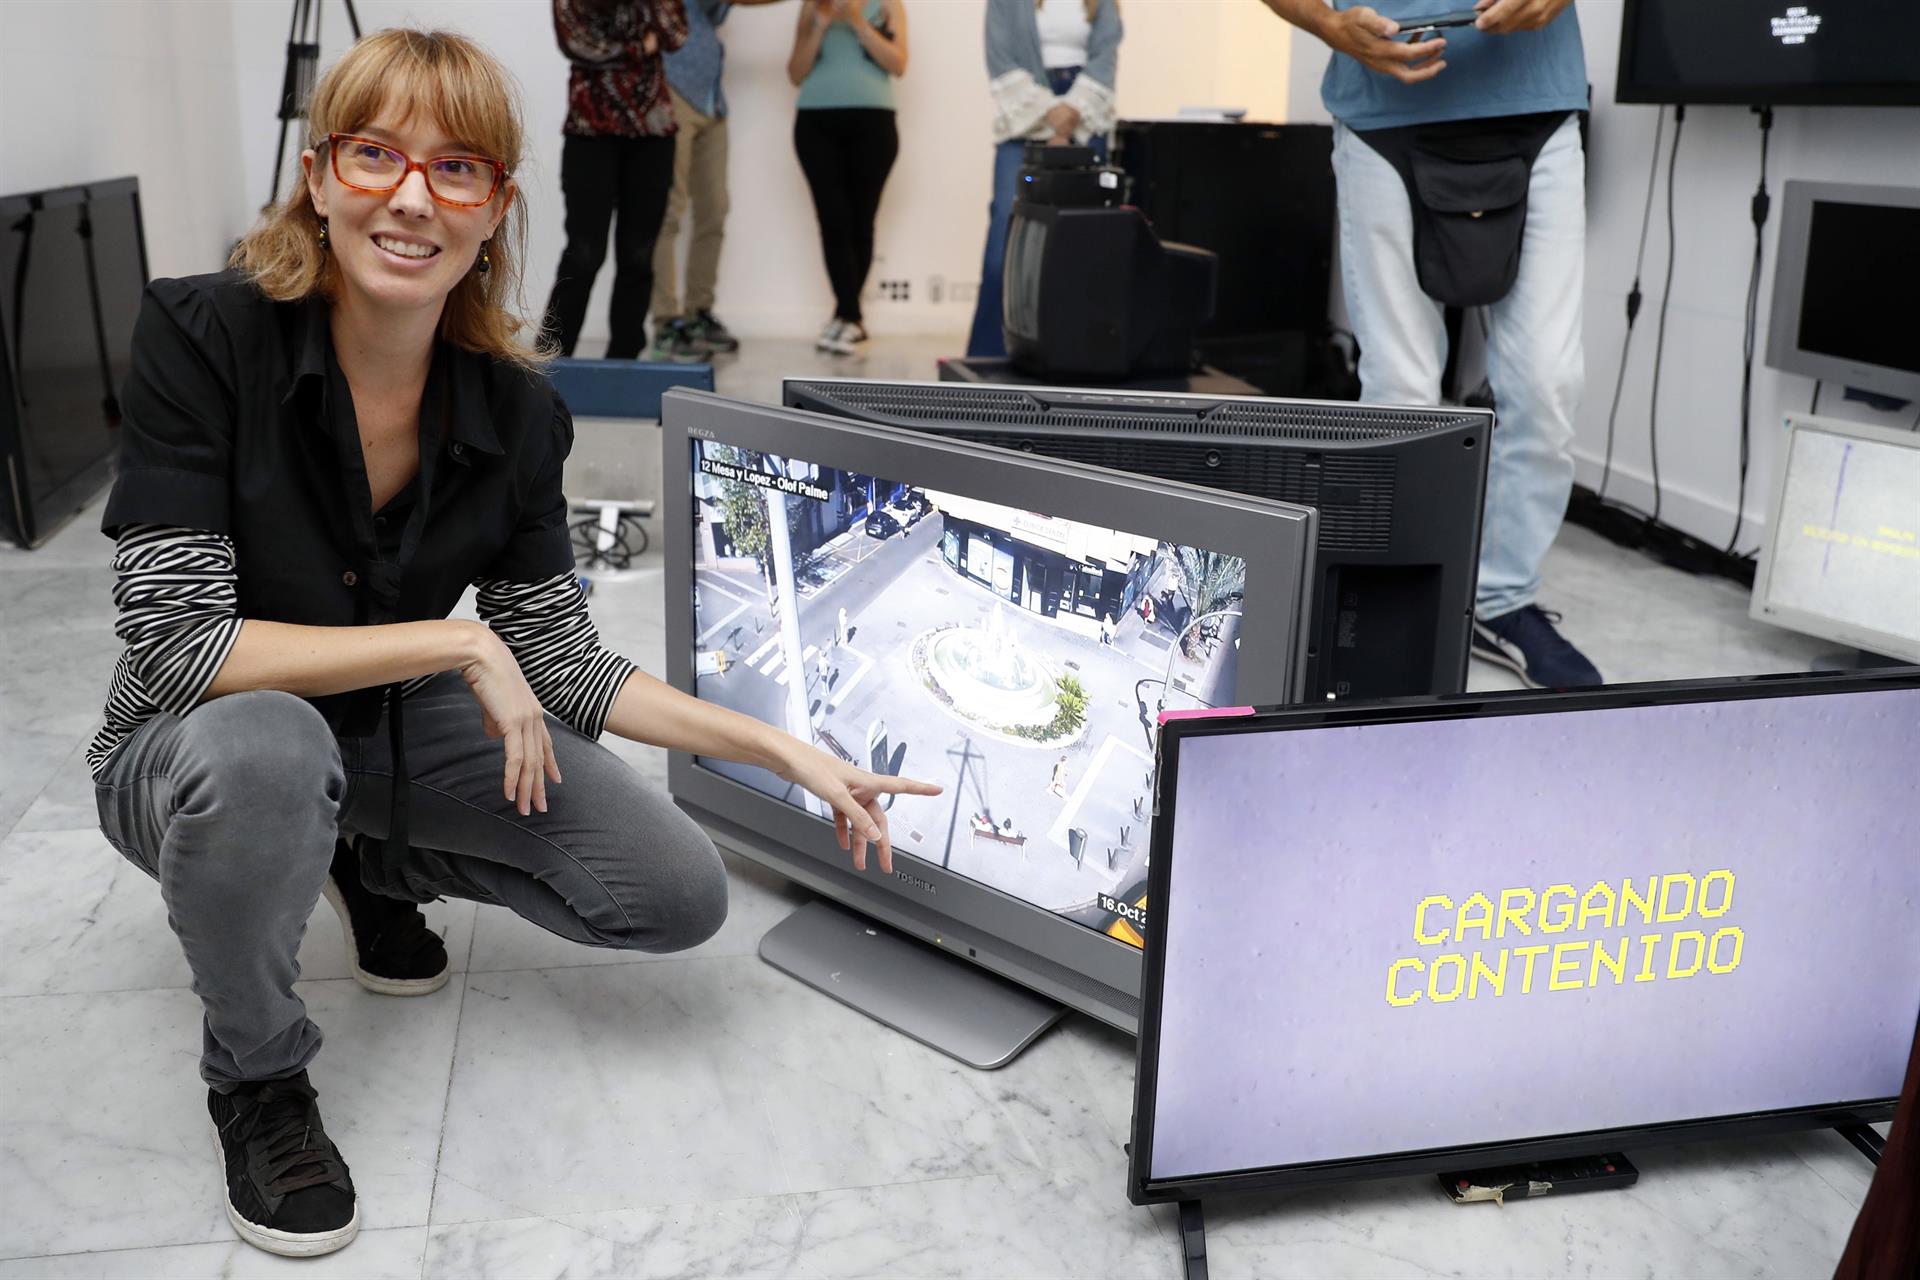 La artista Cristina Maya presentó este jueves en el Centro La Regenta "Vida pública", una instalación que exhibe imágenes tomadas en la calle por cámaras de videovigilancia de Las Palmas de Gran Canaria. EFE/ Elvira Urquijo A.